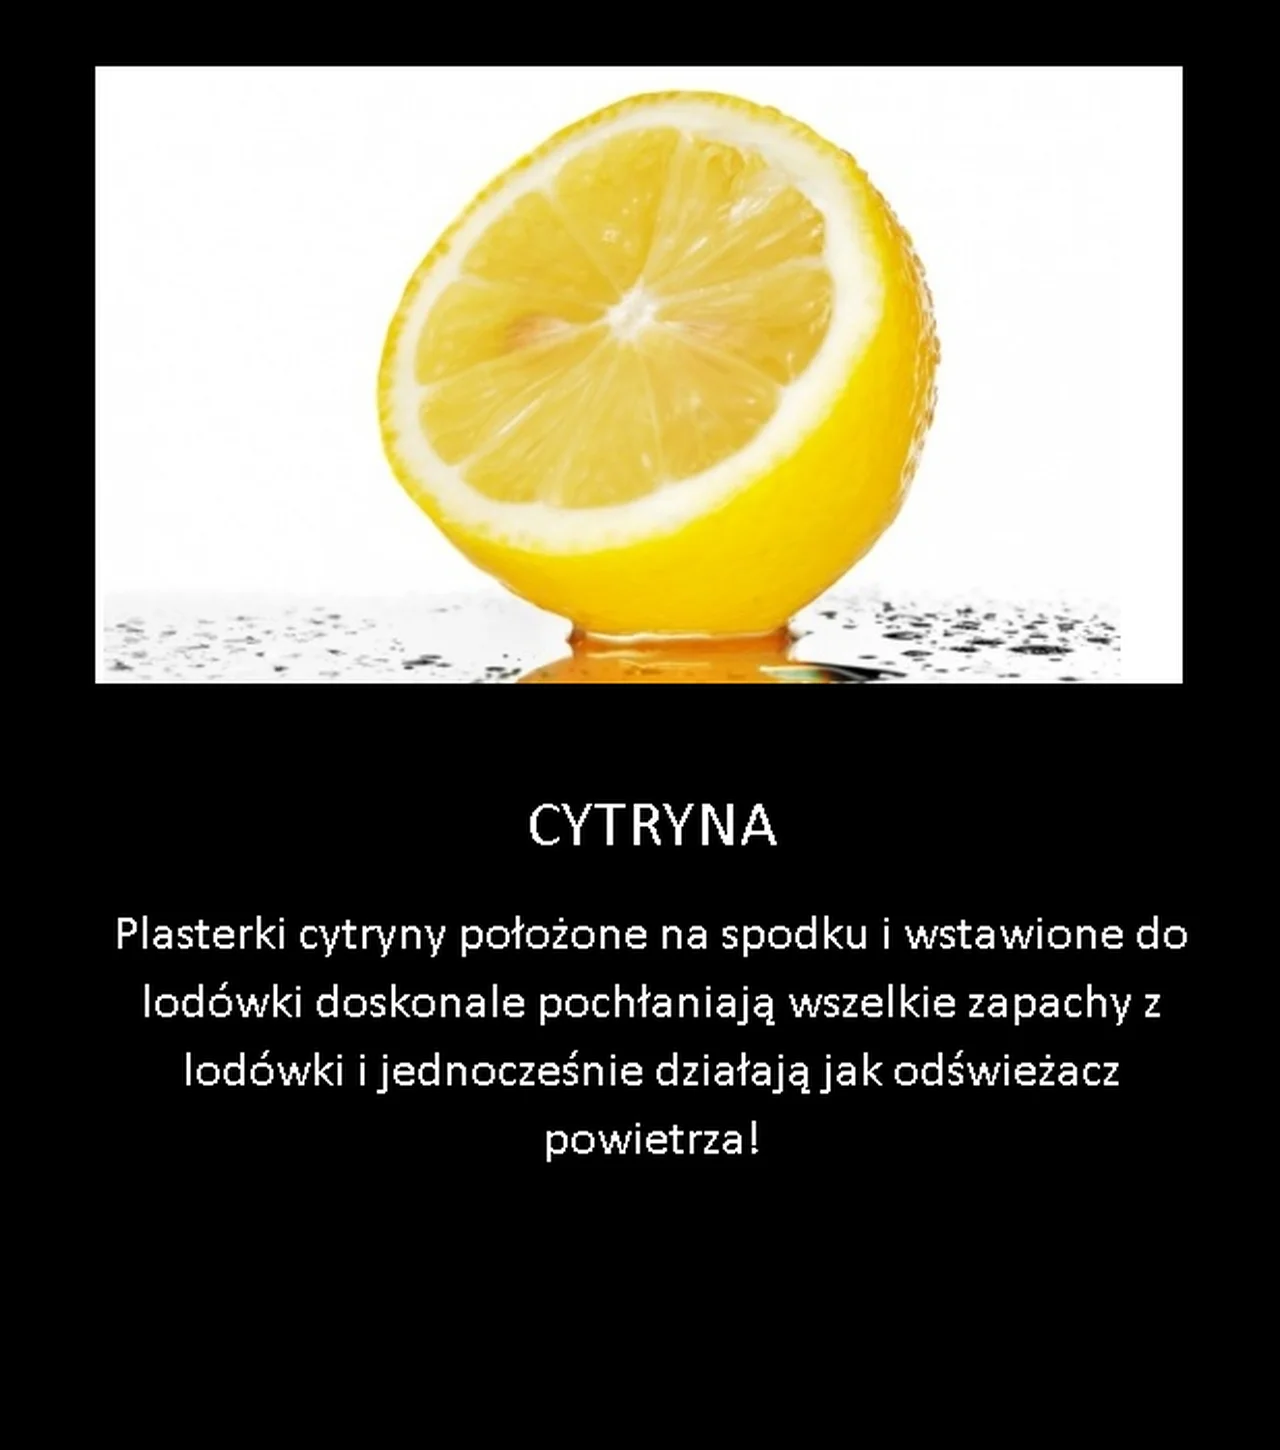 Cytrynowy trik kuchenny